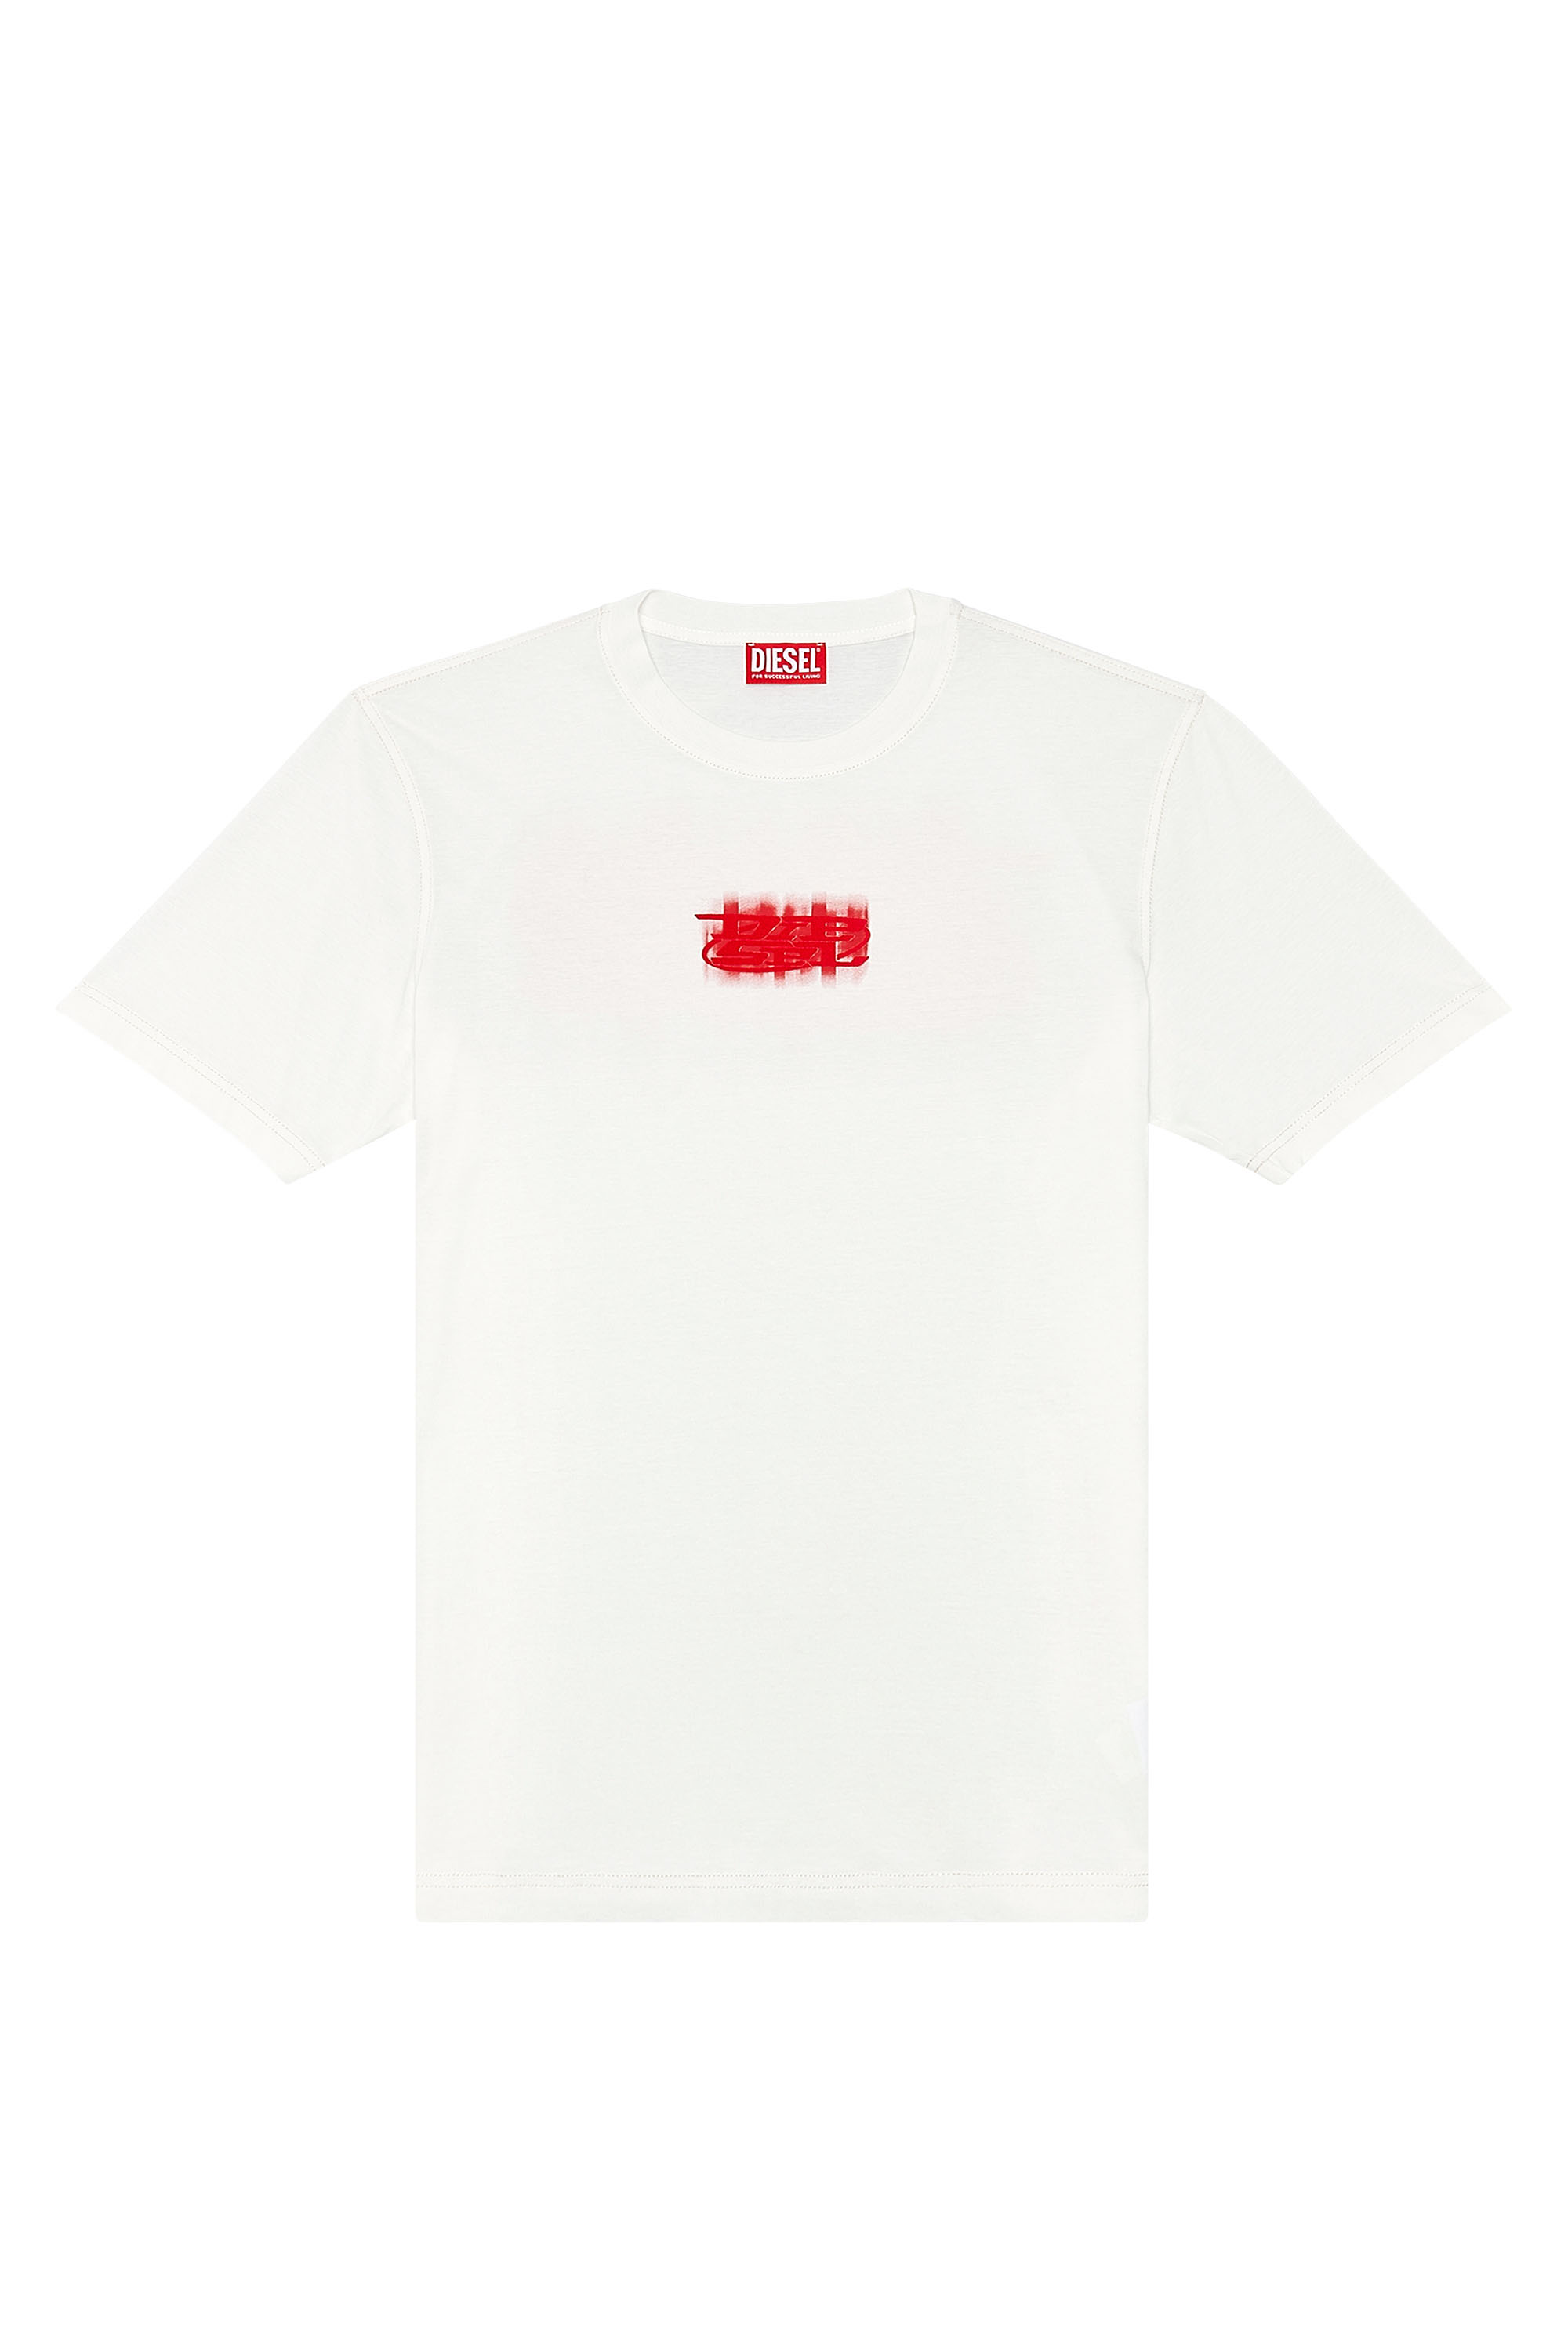 Diesel - T-JUST-N4, Hombre Camiseta de algodón orgánico con logotipo en relieve in Blanco - Image 3